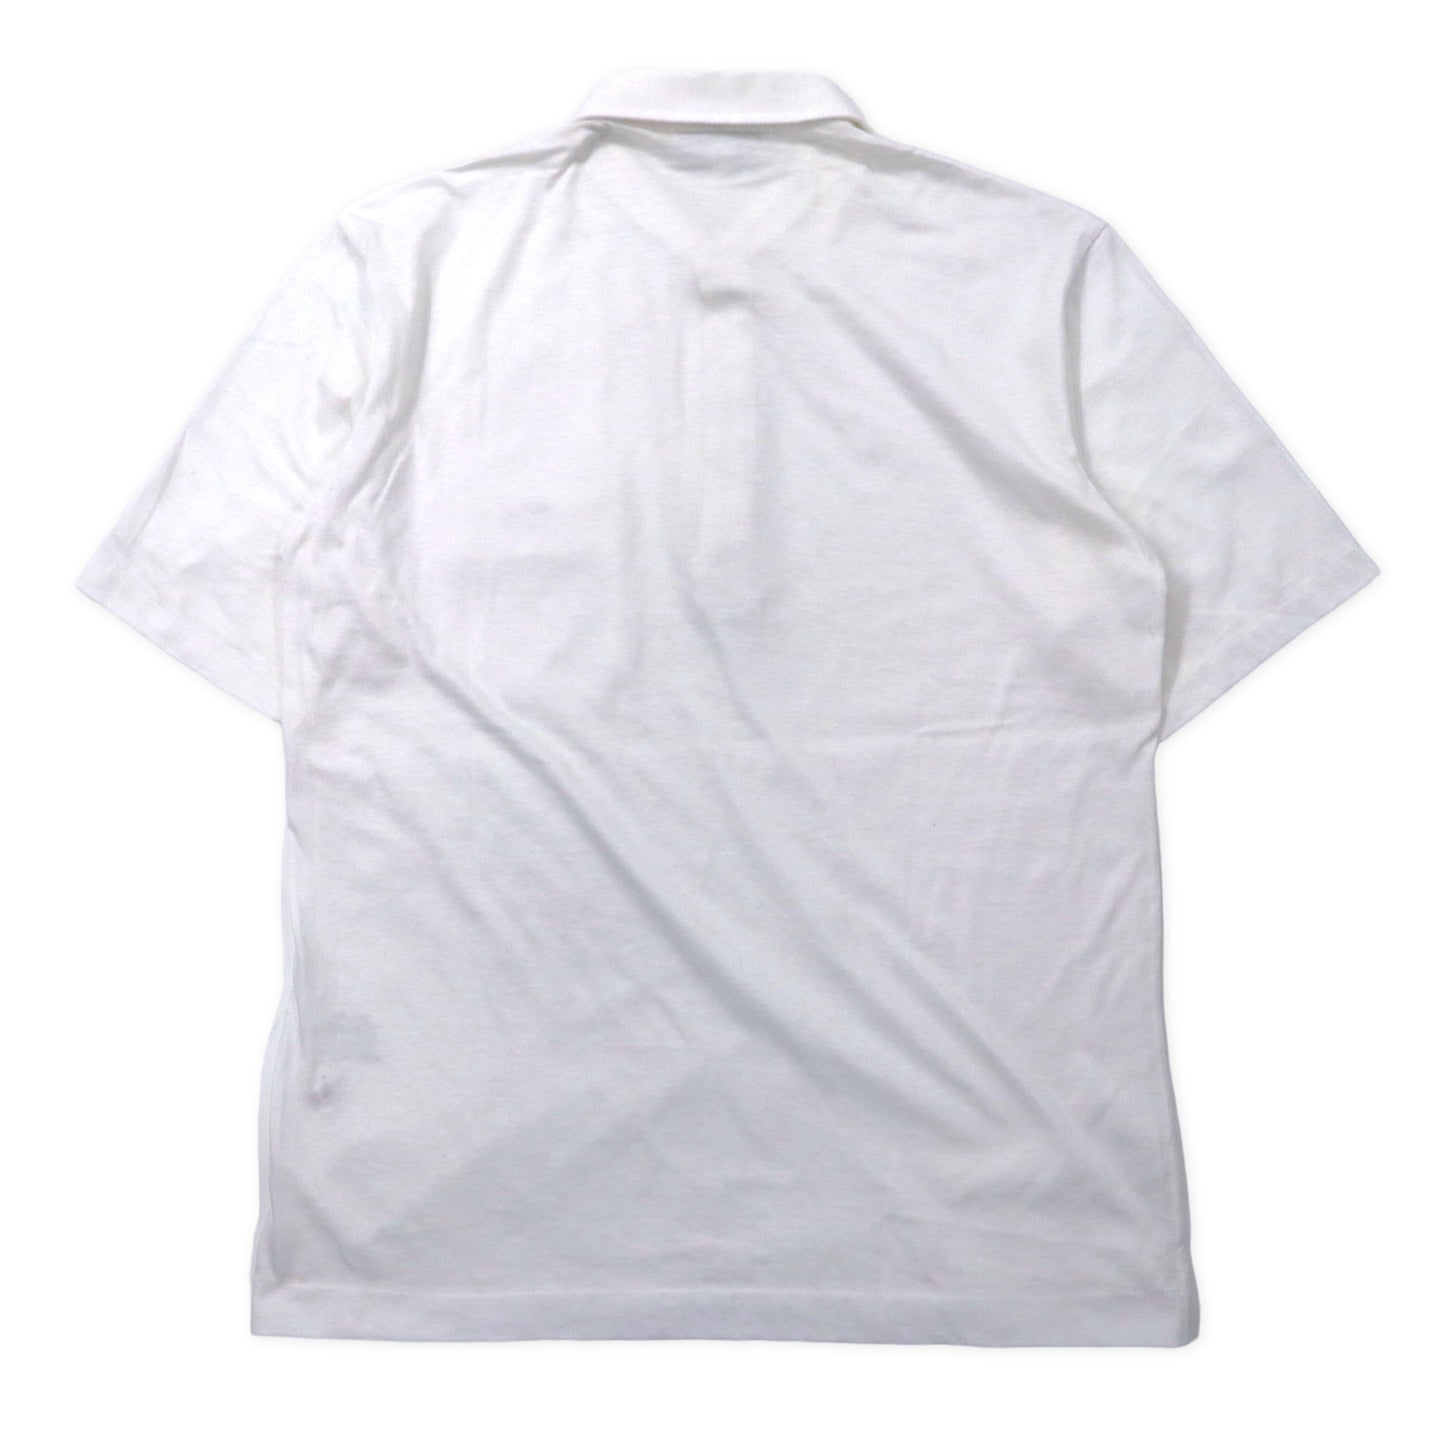 CHEMISE LACOSTE 90年代 ポロシャツ 3 ホワイト コットン ワンポイントロゴ